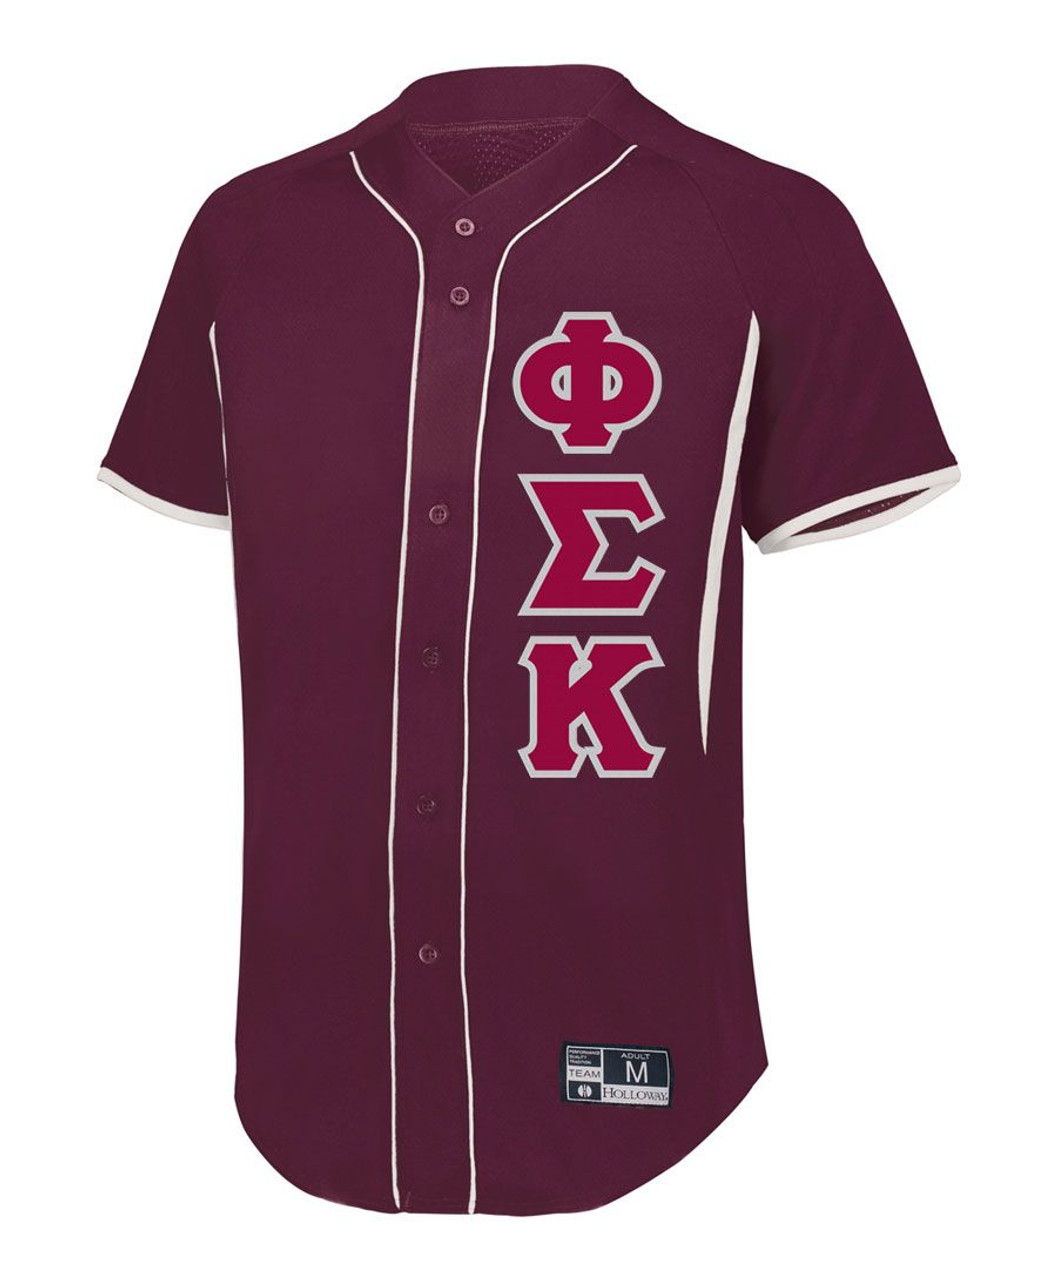 Kappa Sig Personalized White Mesh Baseball Jersey